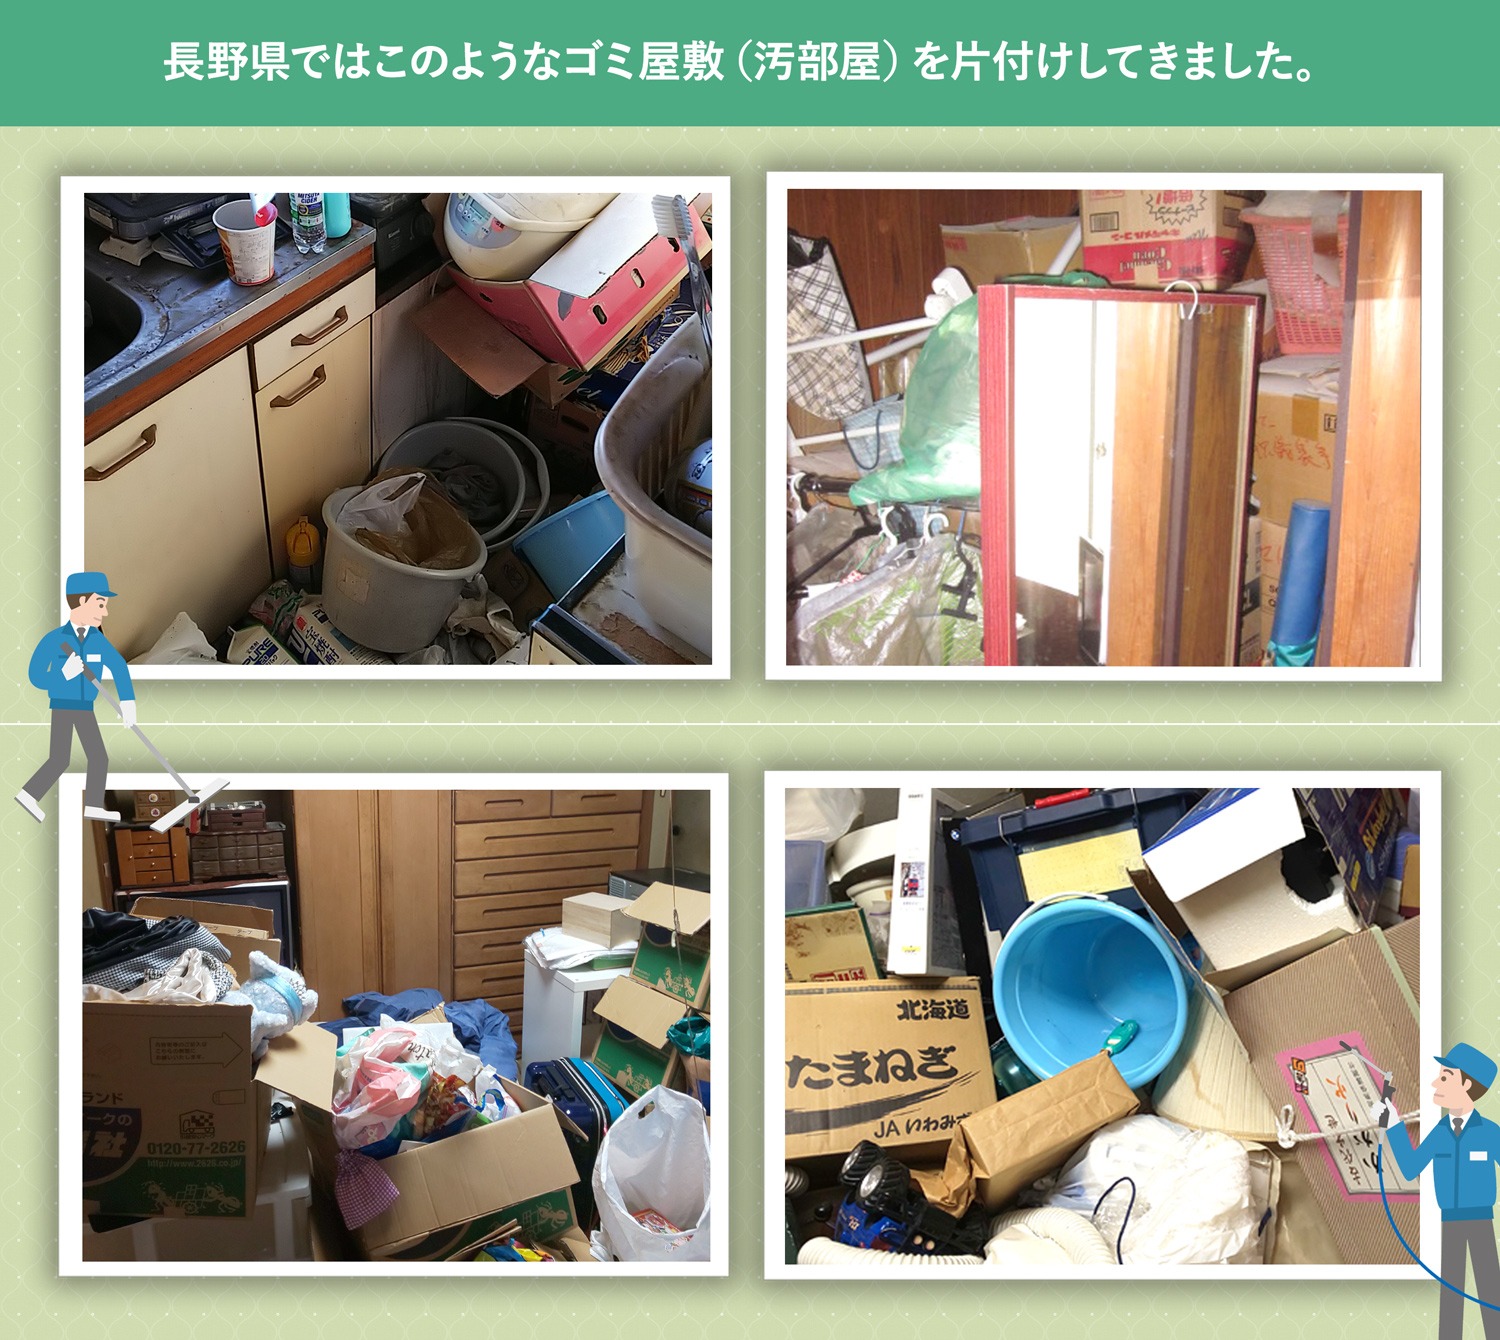 長野県で行ったで行ったごみ屋敷・汚部屋の片付けの一例